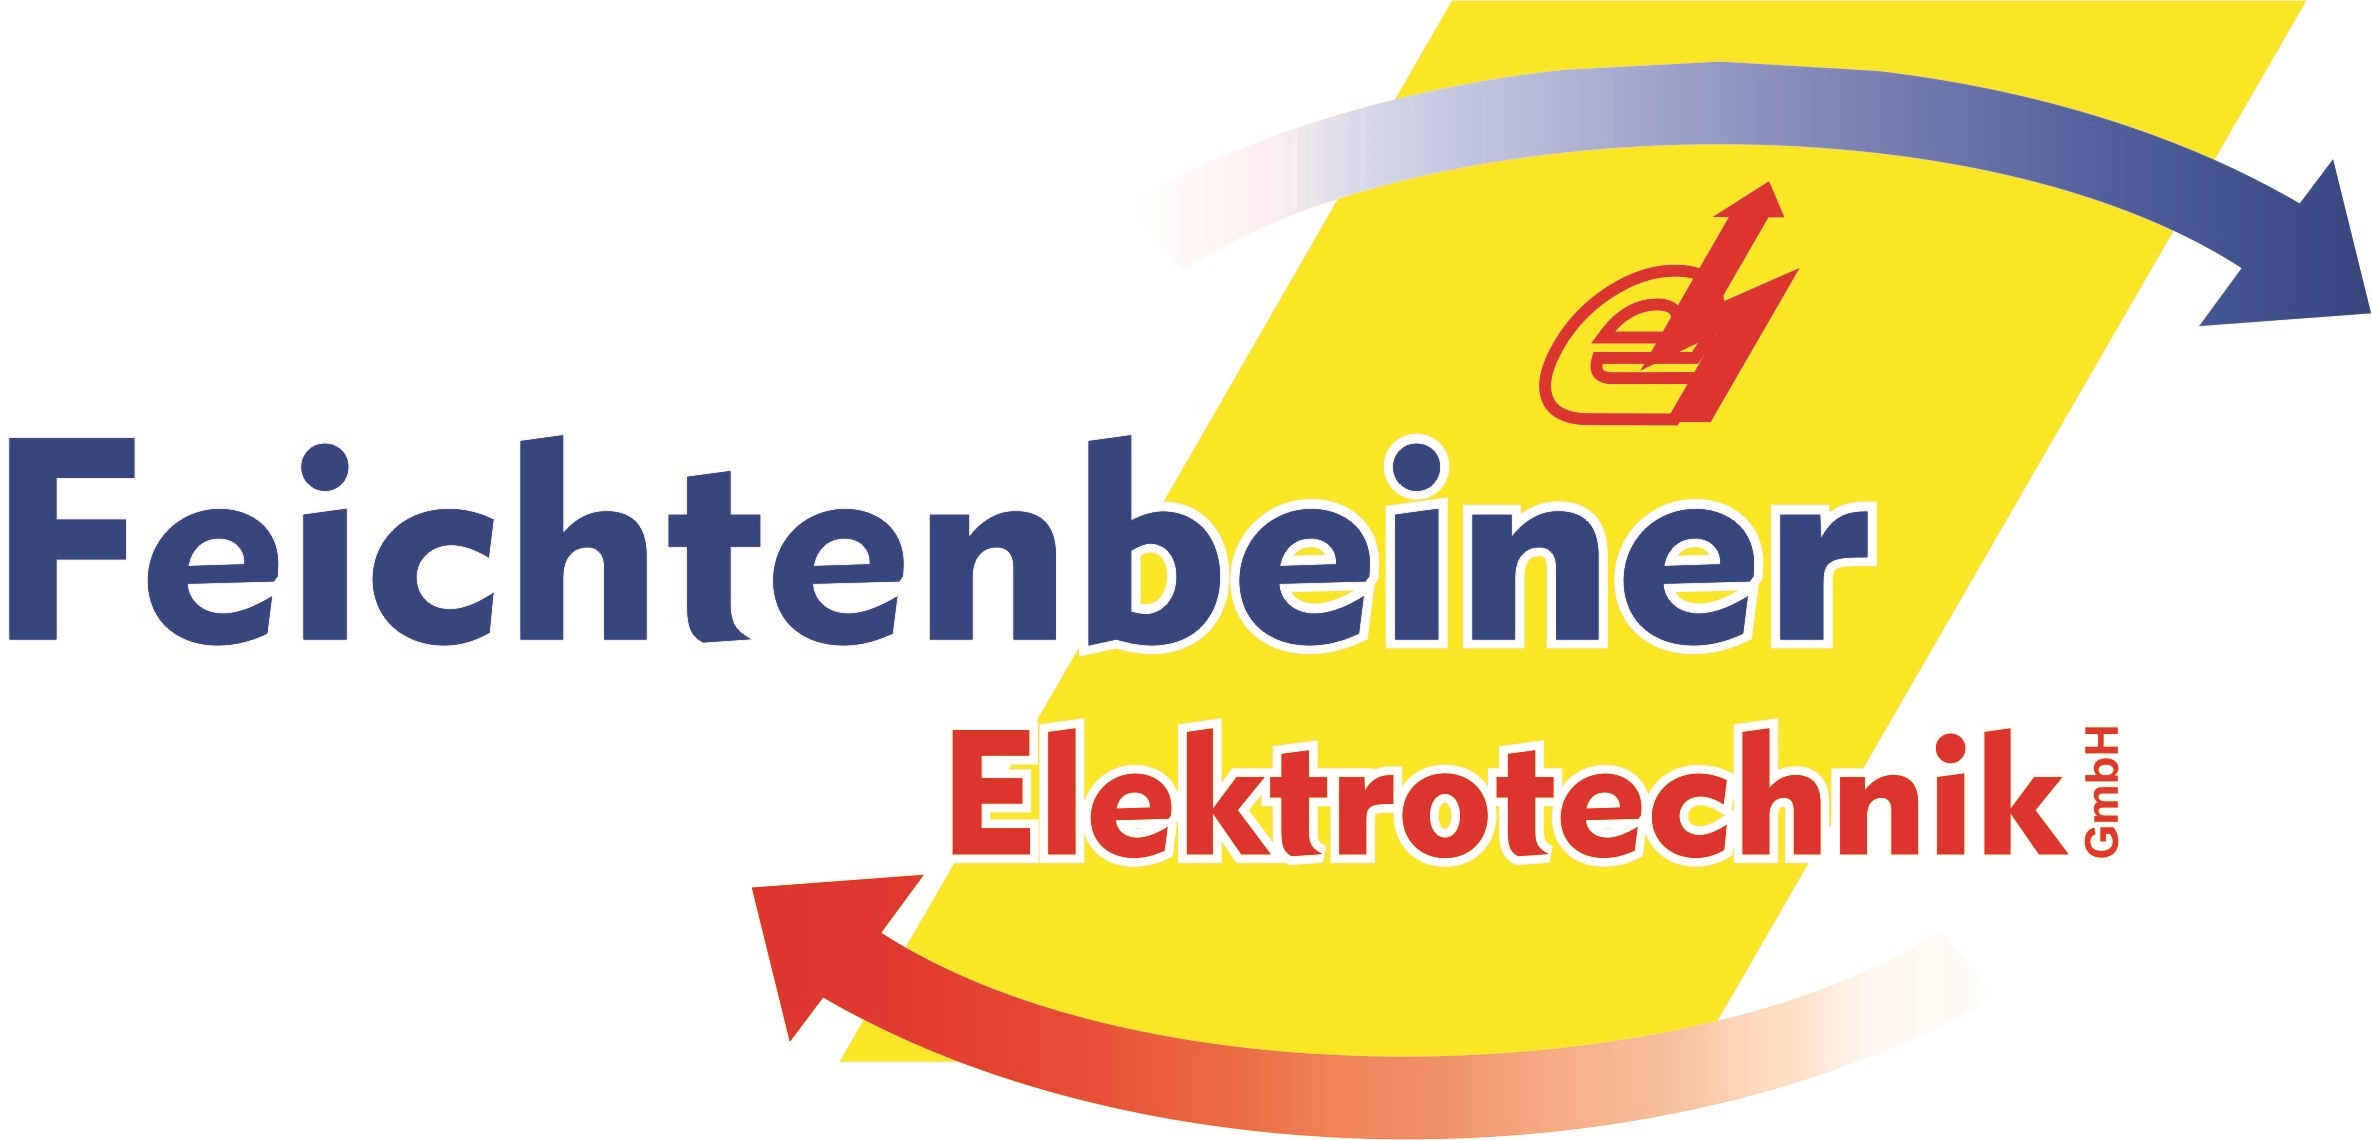 Feichtenbeiner Elektrotechnik GmbH